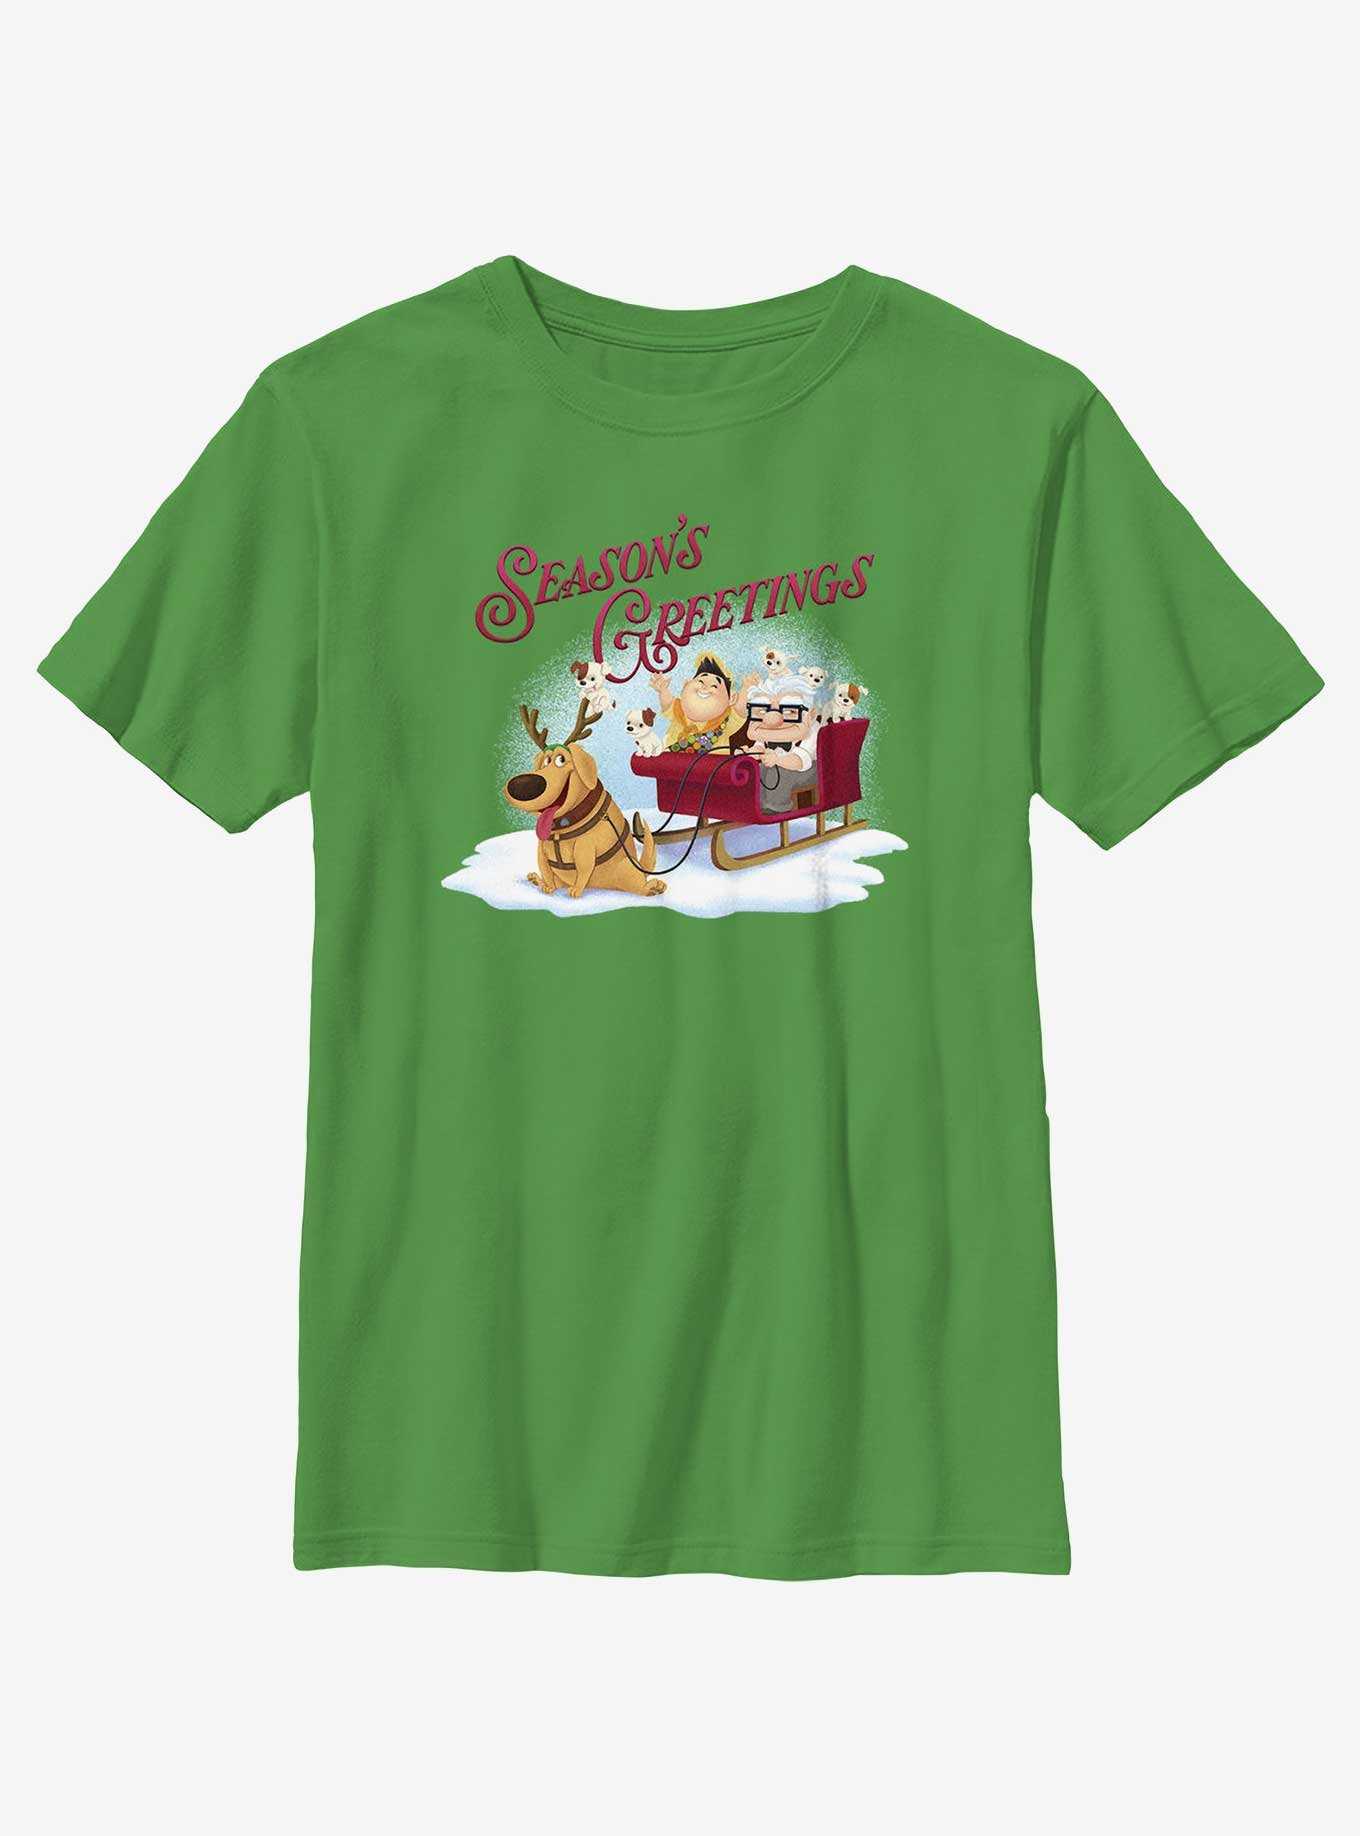 Disney Pixar Up Seasons Greetings Youth T-Shirt, , hi-res